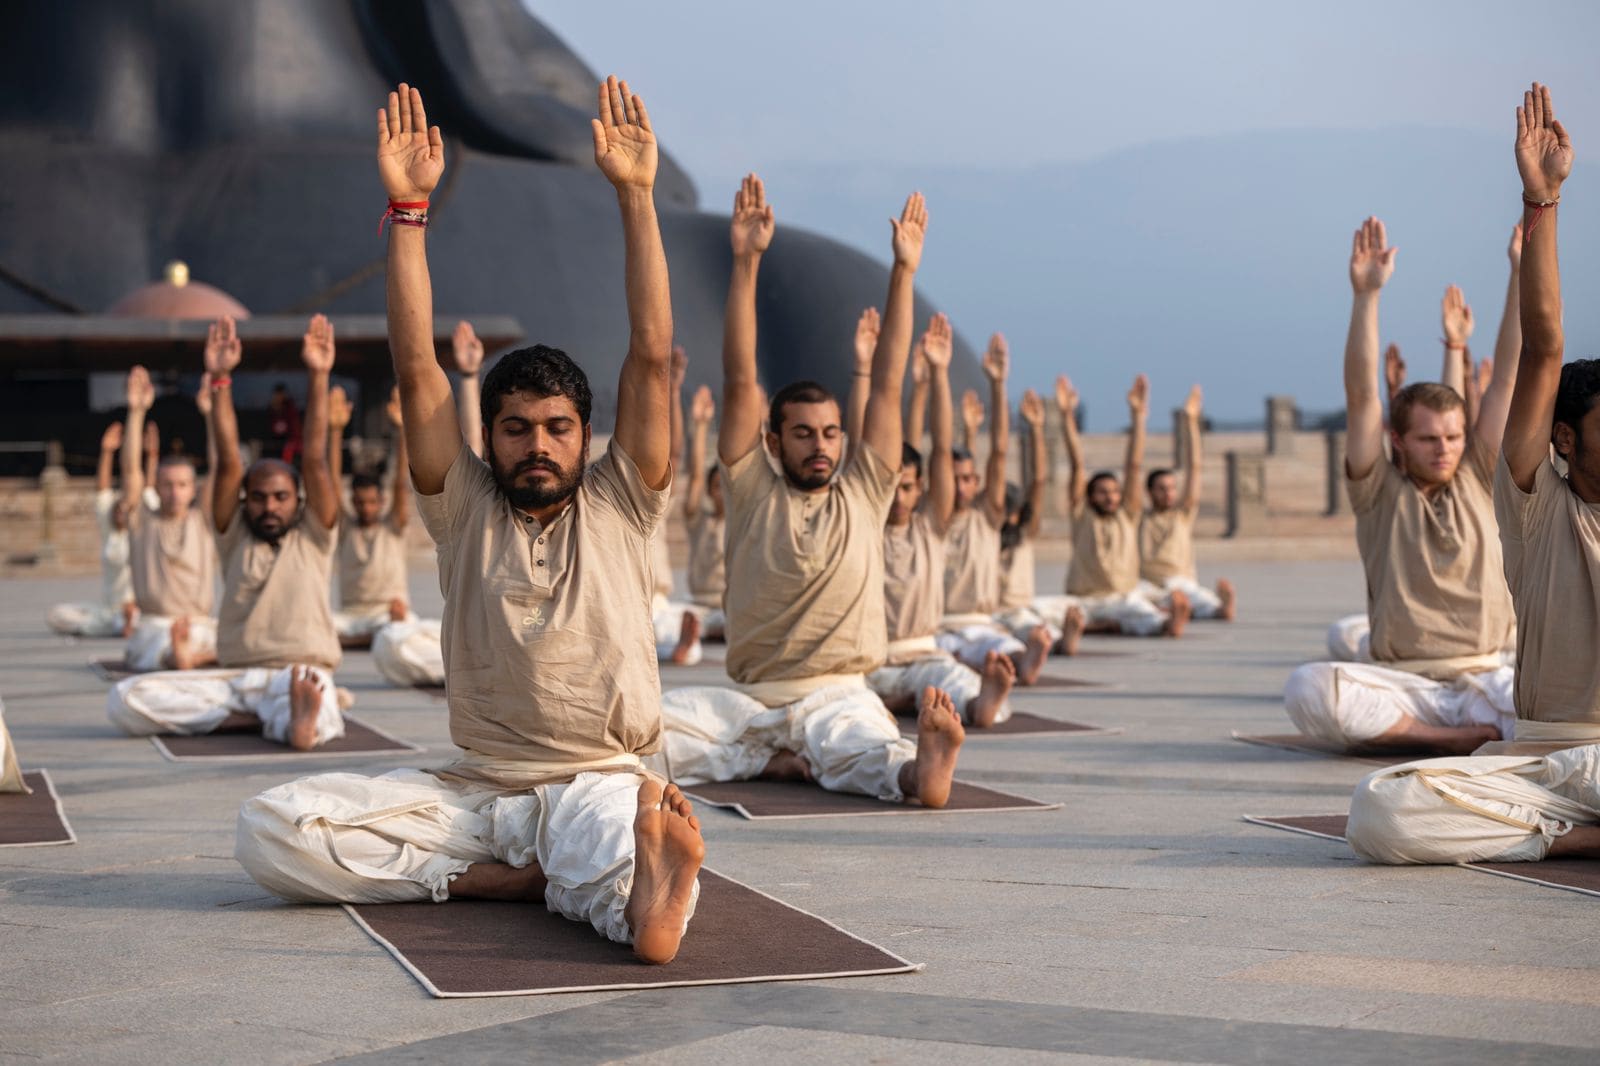 Ojassv Hatha Yoga aims to build healthy, joyful generation